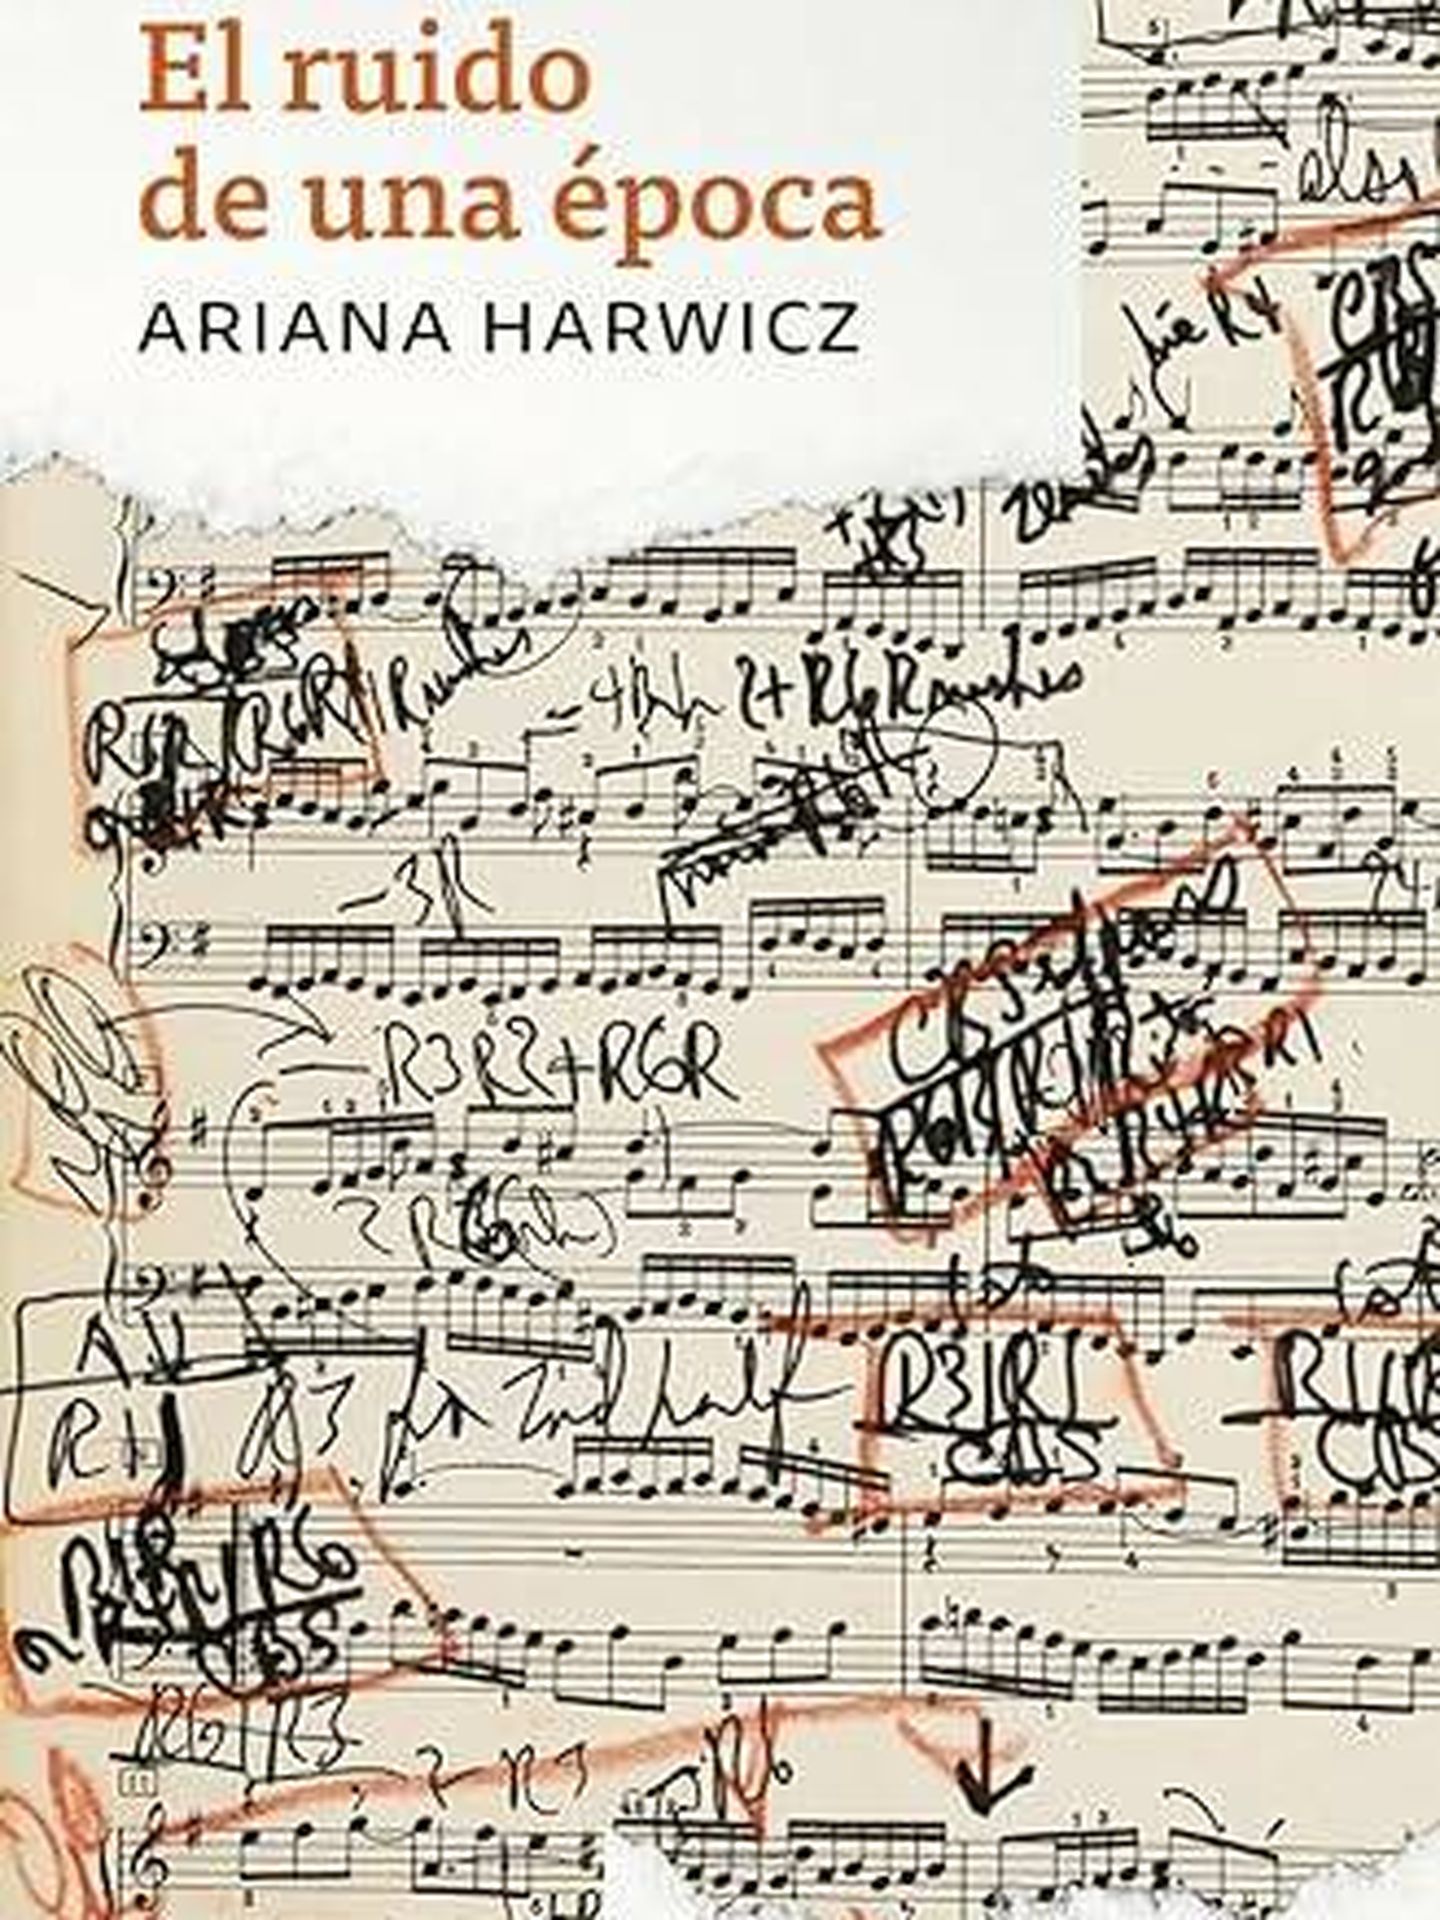 Portada de 'El ruido de una época', el nuevo libro de Ariana Harwicz.